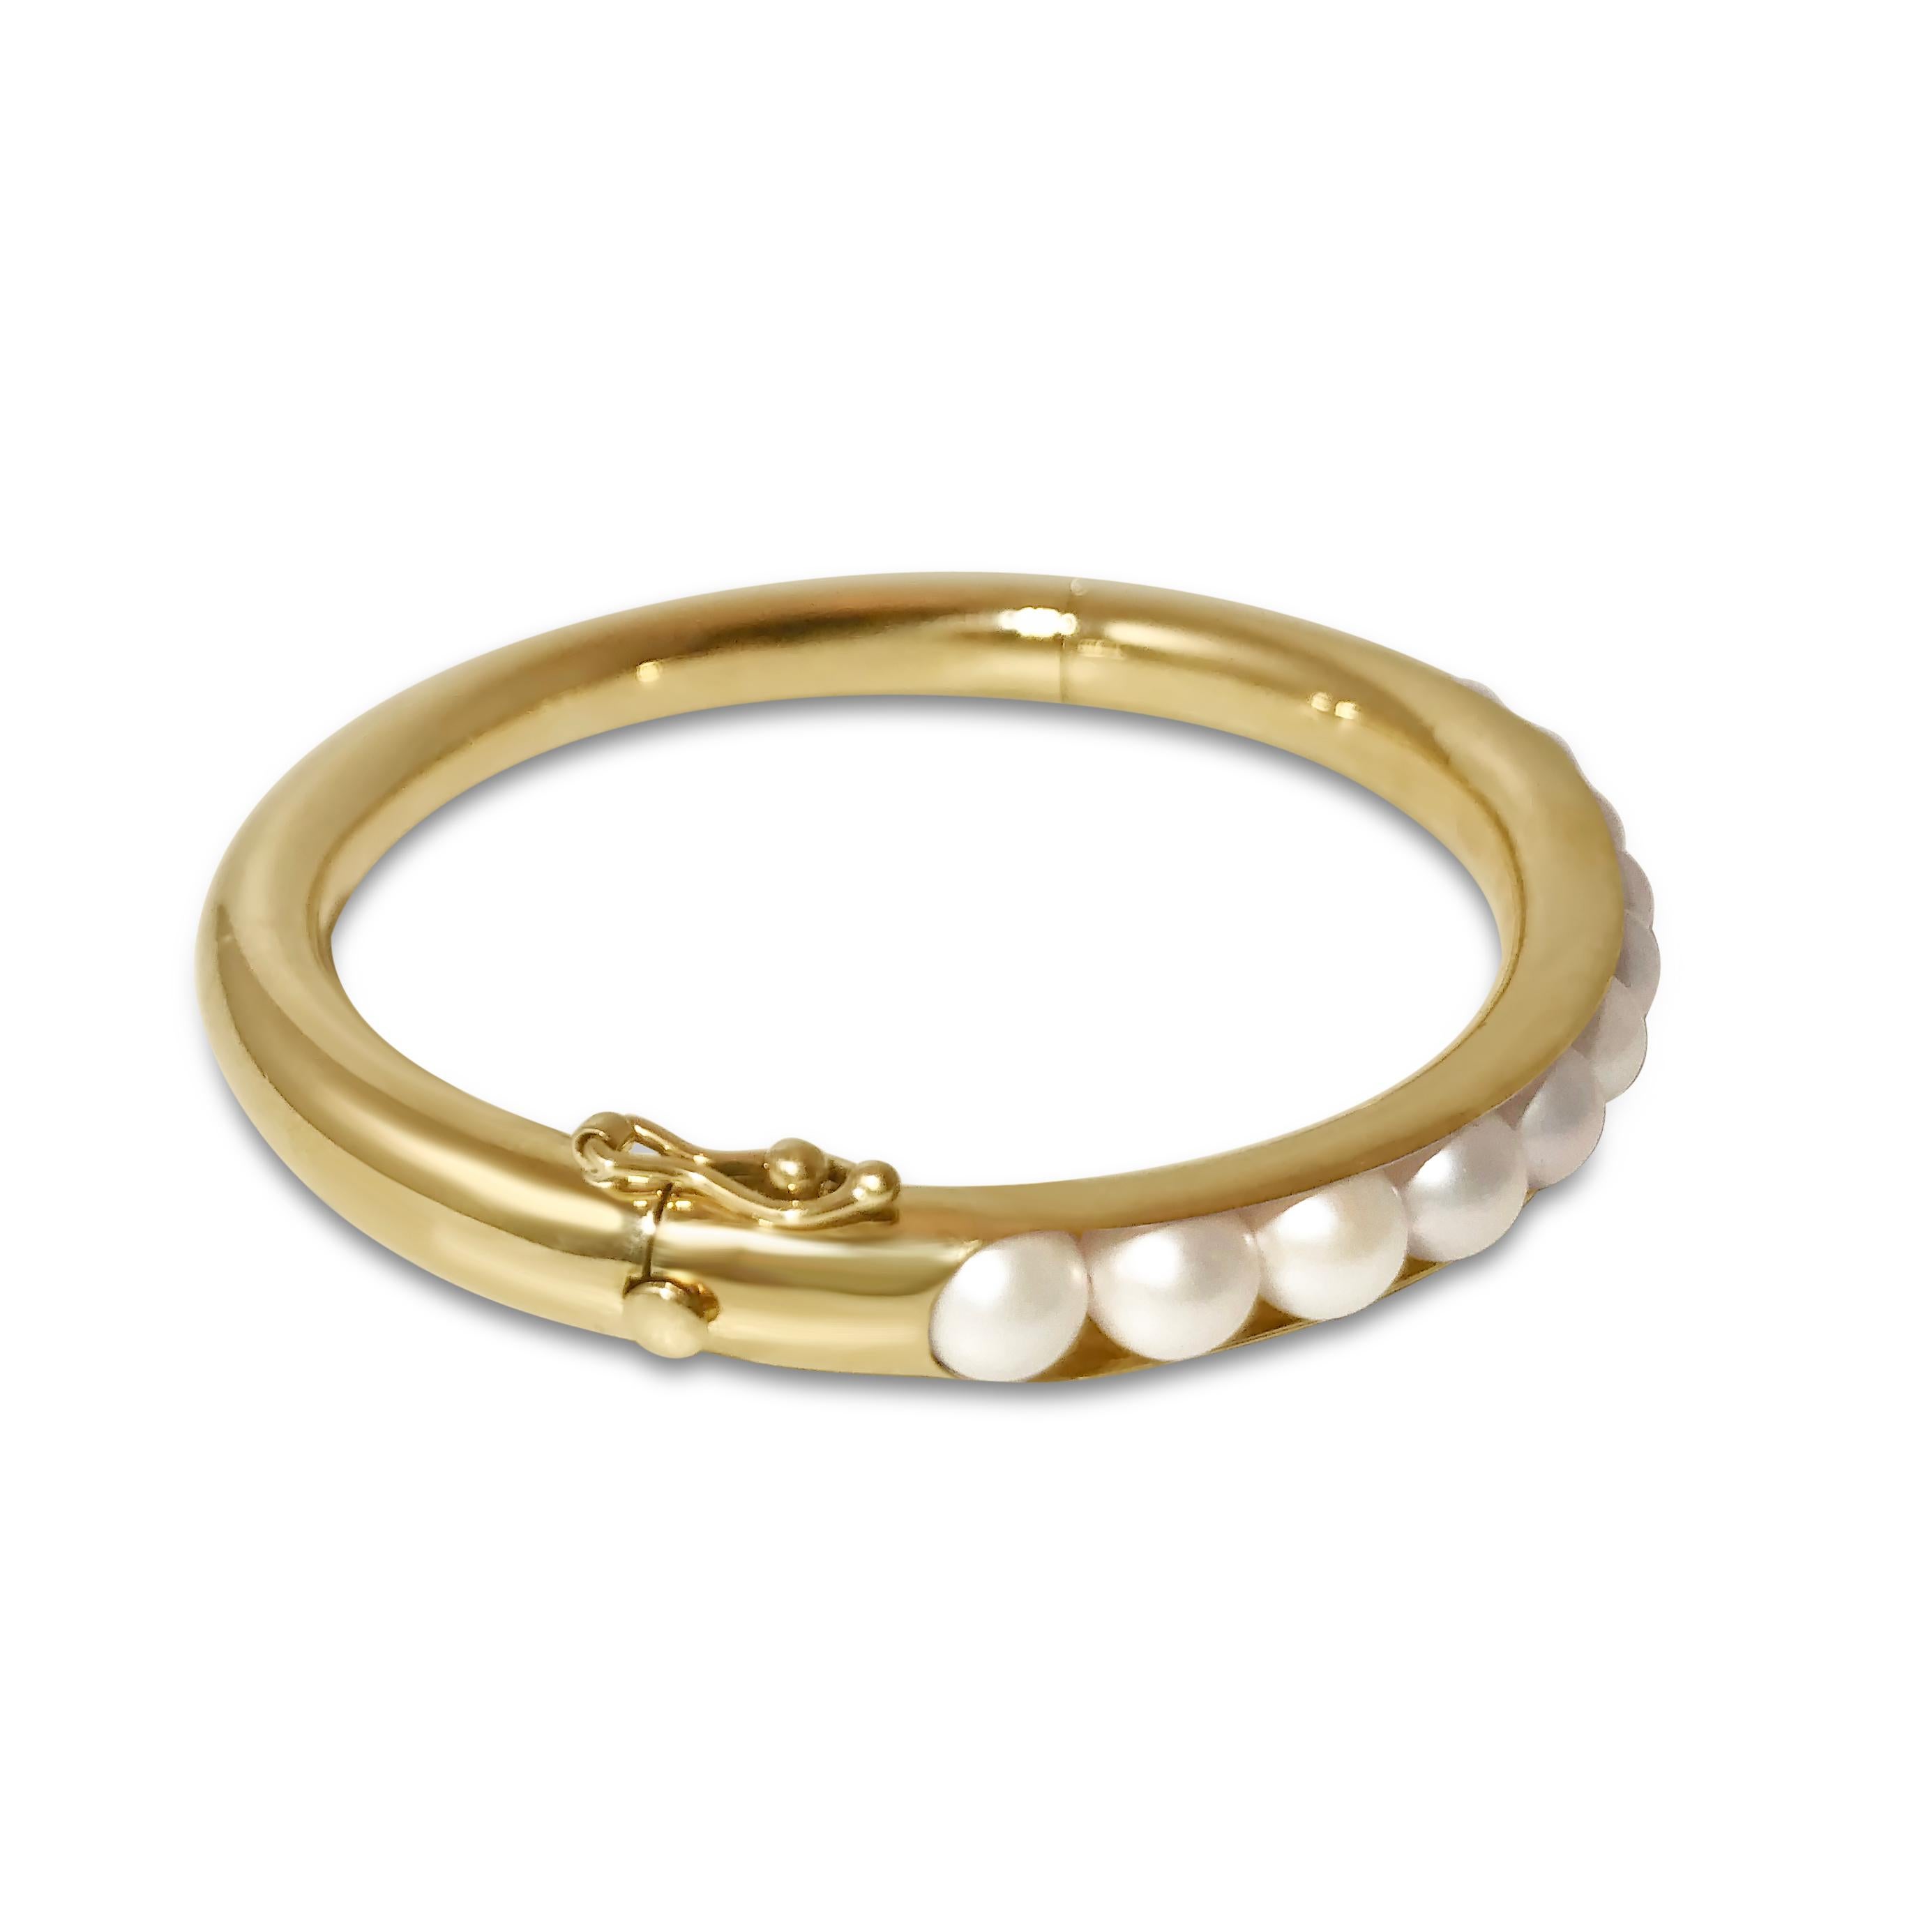 Le moderne rencontre le classique avec notre bangle en or avec perles semi-précieuses incrustées. Notre bracelet 'T-Pearl' en or jaune 14K de forme ovale mesure ¼ de pouce de largeur et se ferme en toute sécurité grâce à un bouton-pression et une